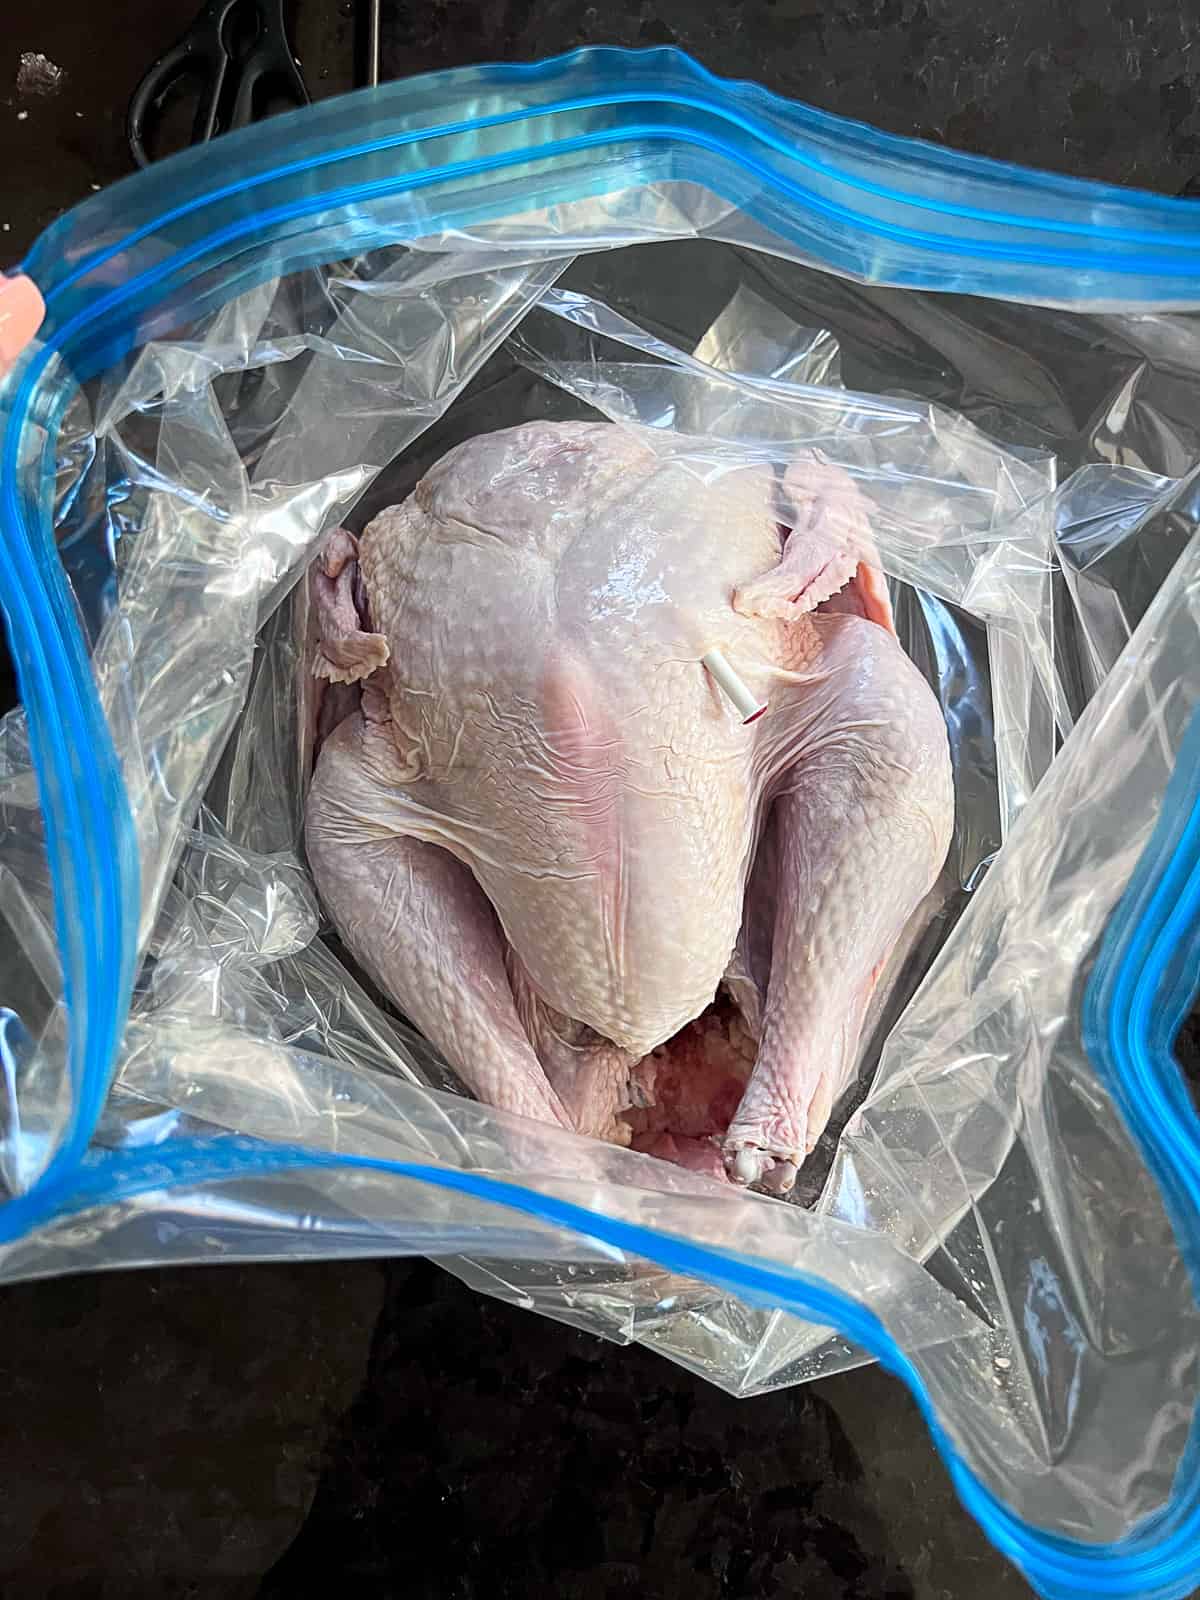 Whole Turkey Inside Turkey Brining Bag